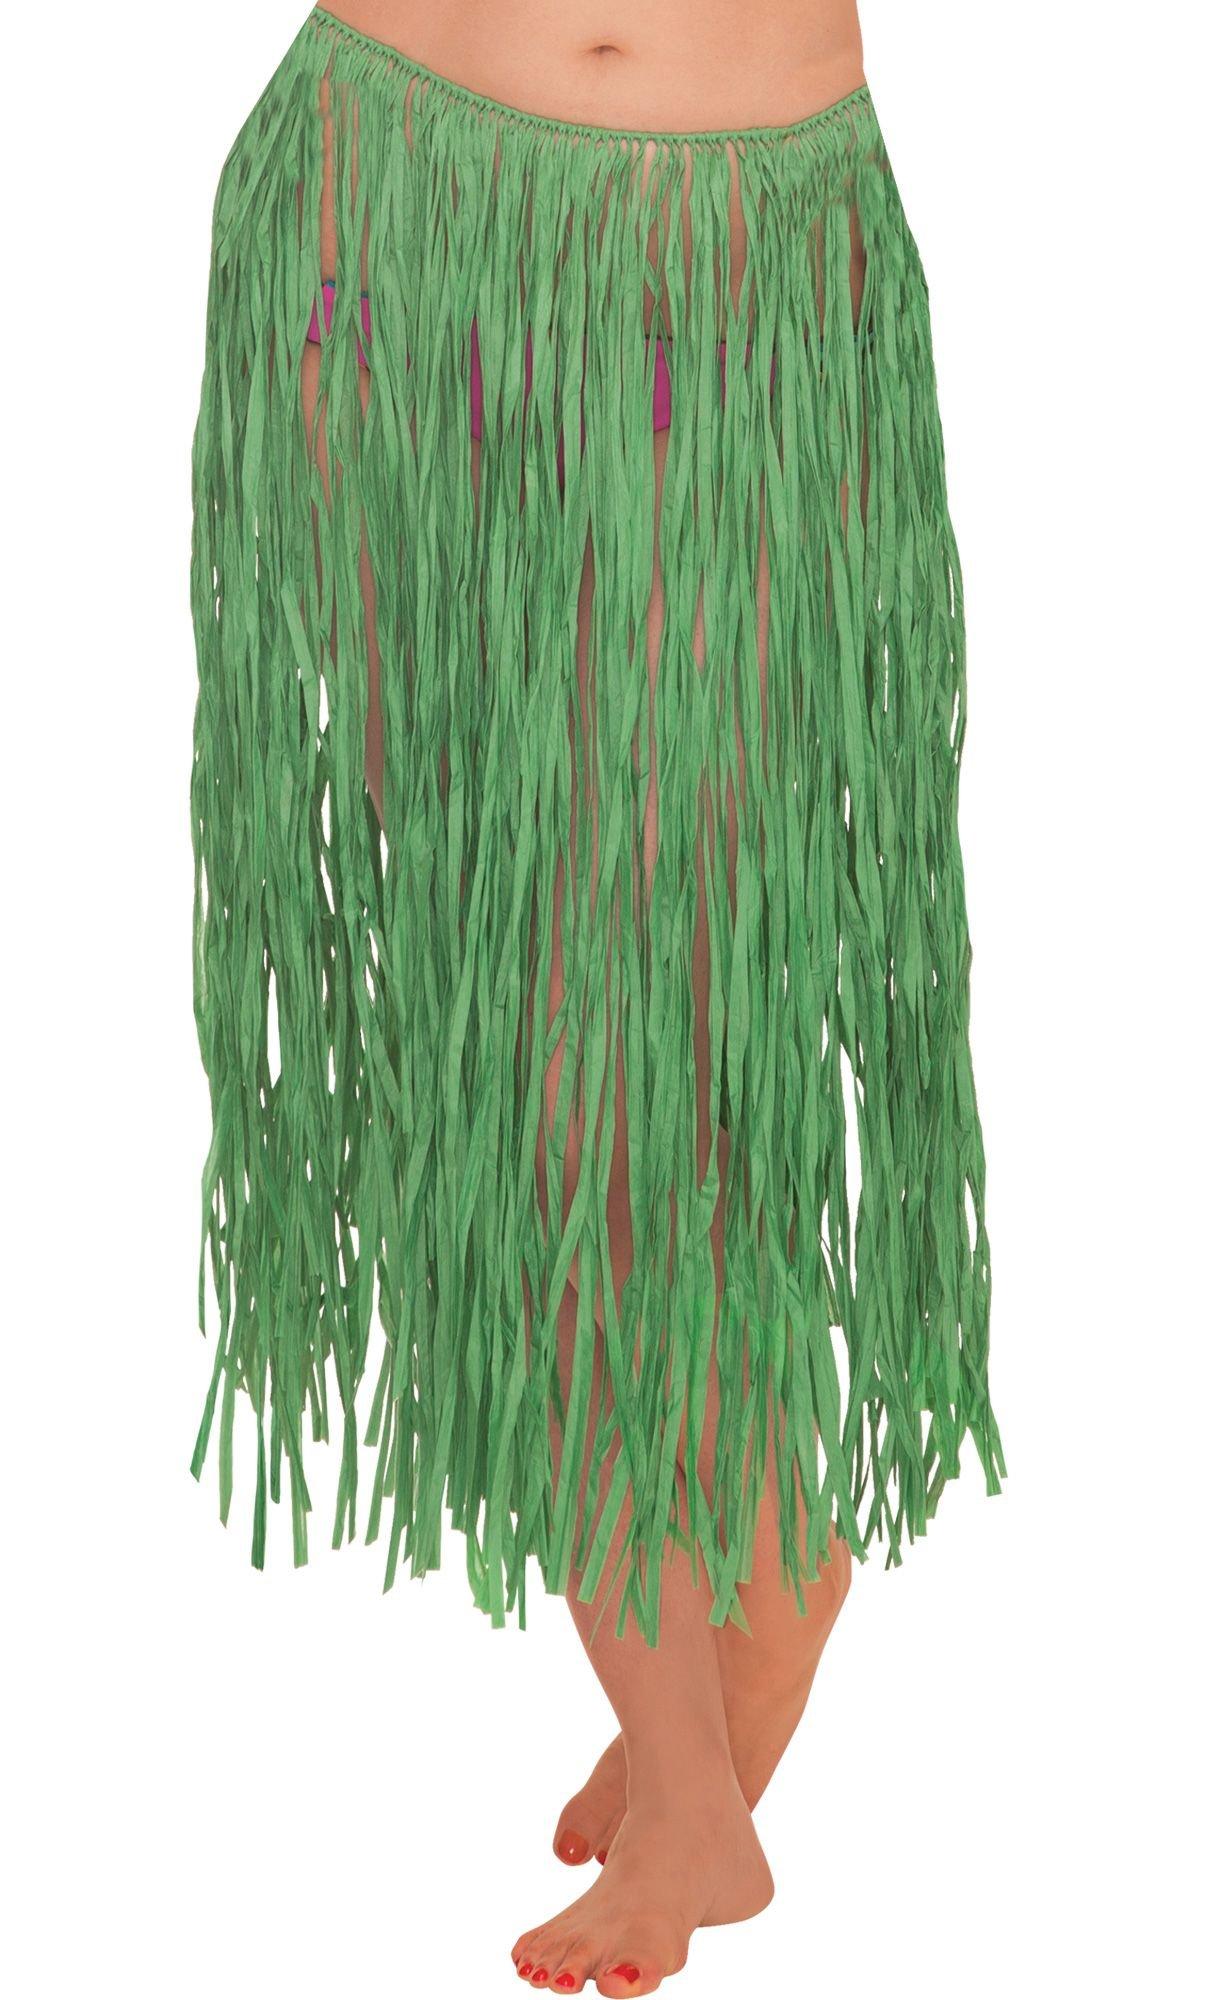 Grass Skirt